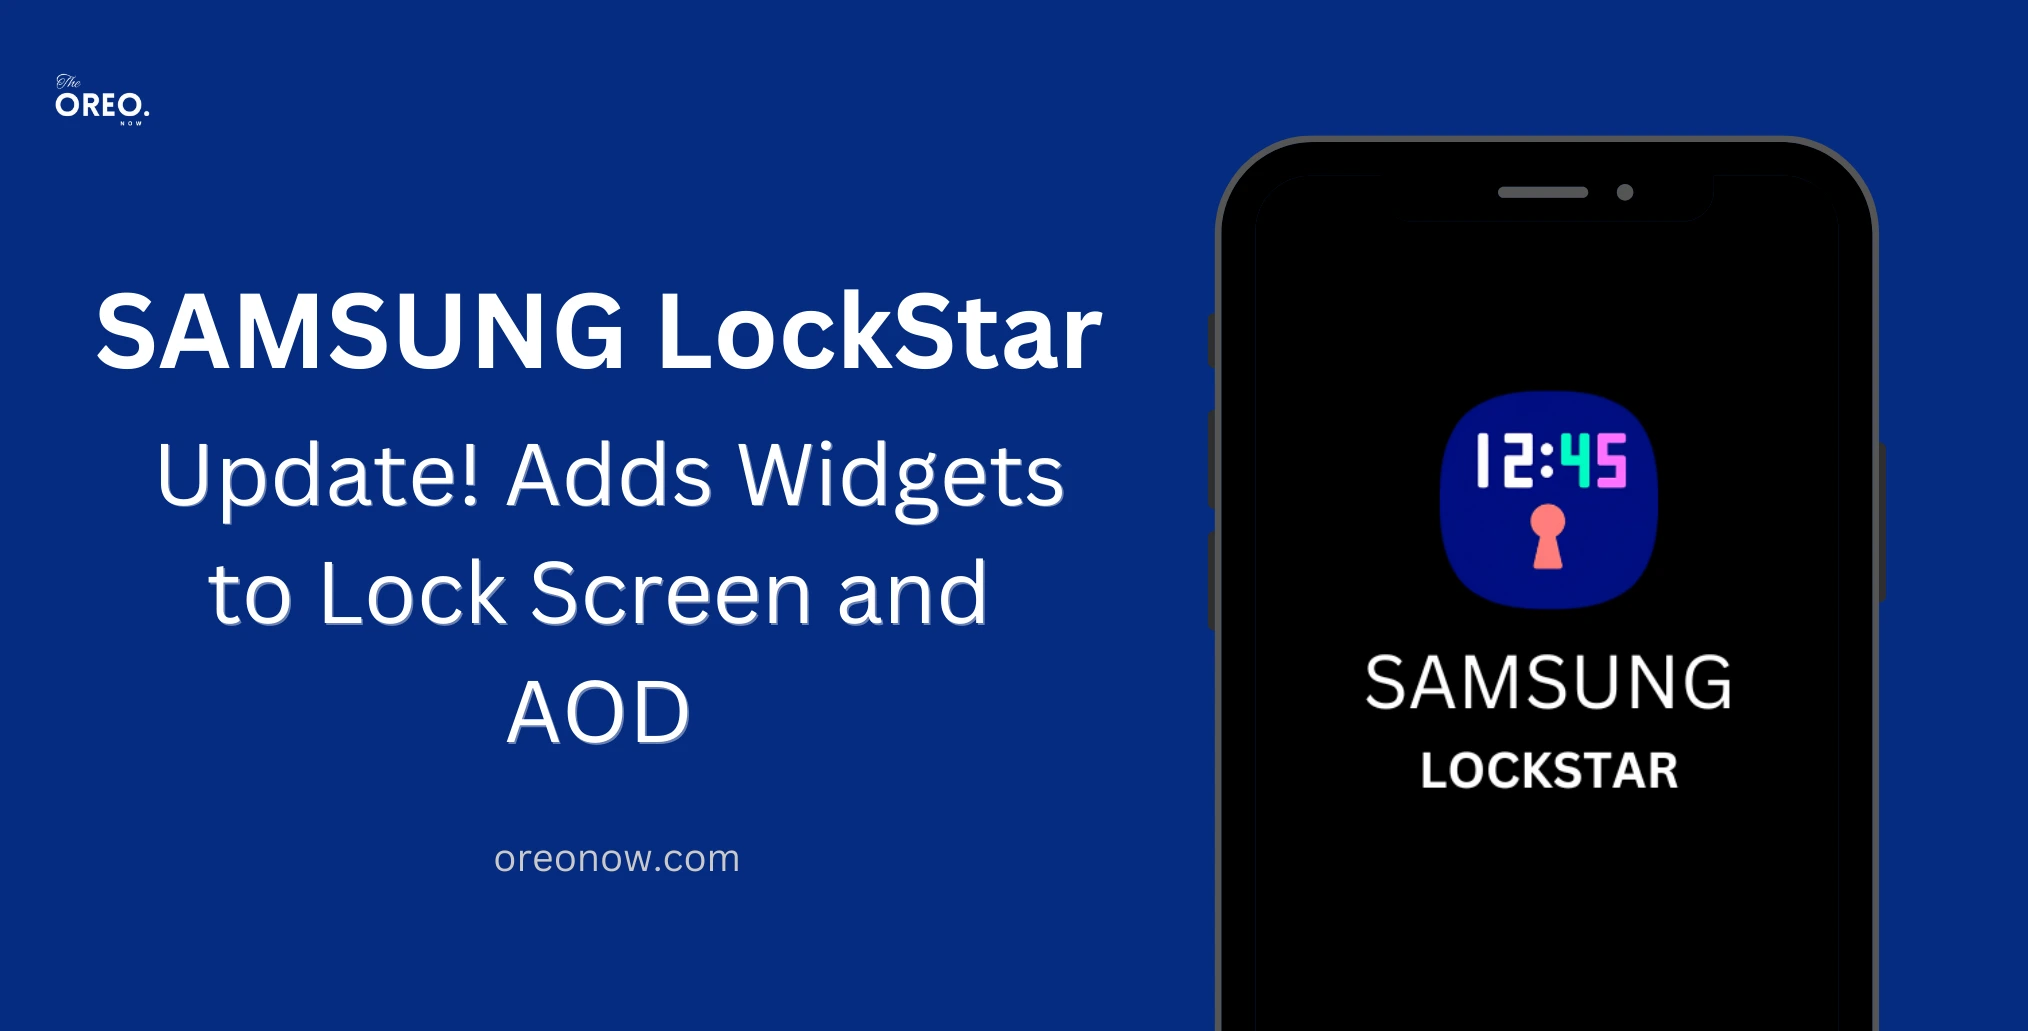 Samsung LockStar Update